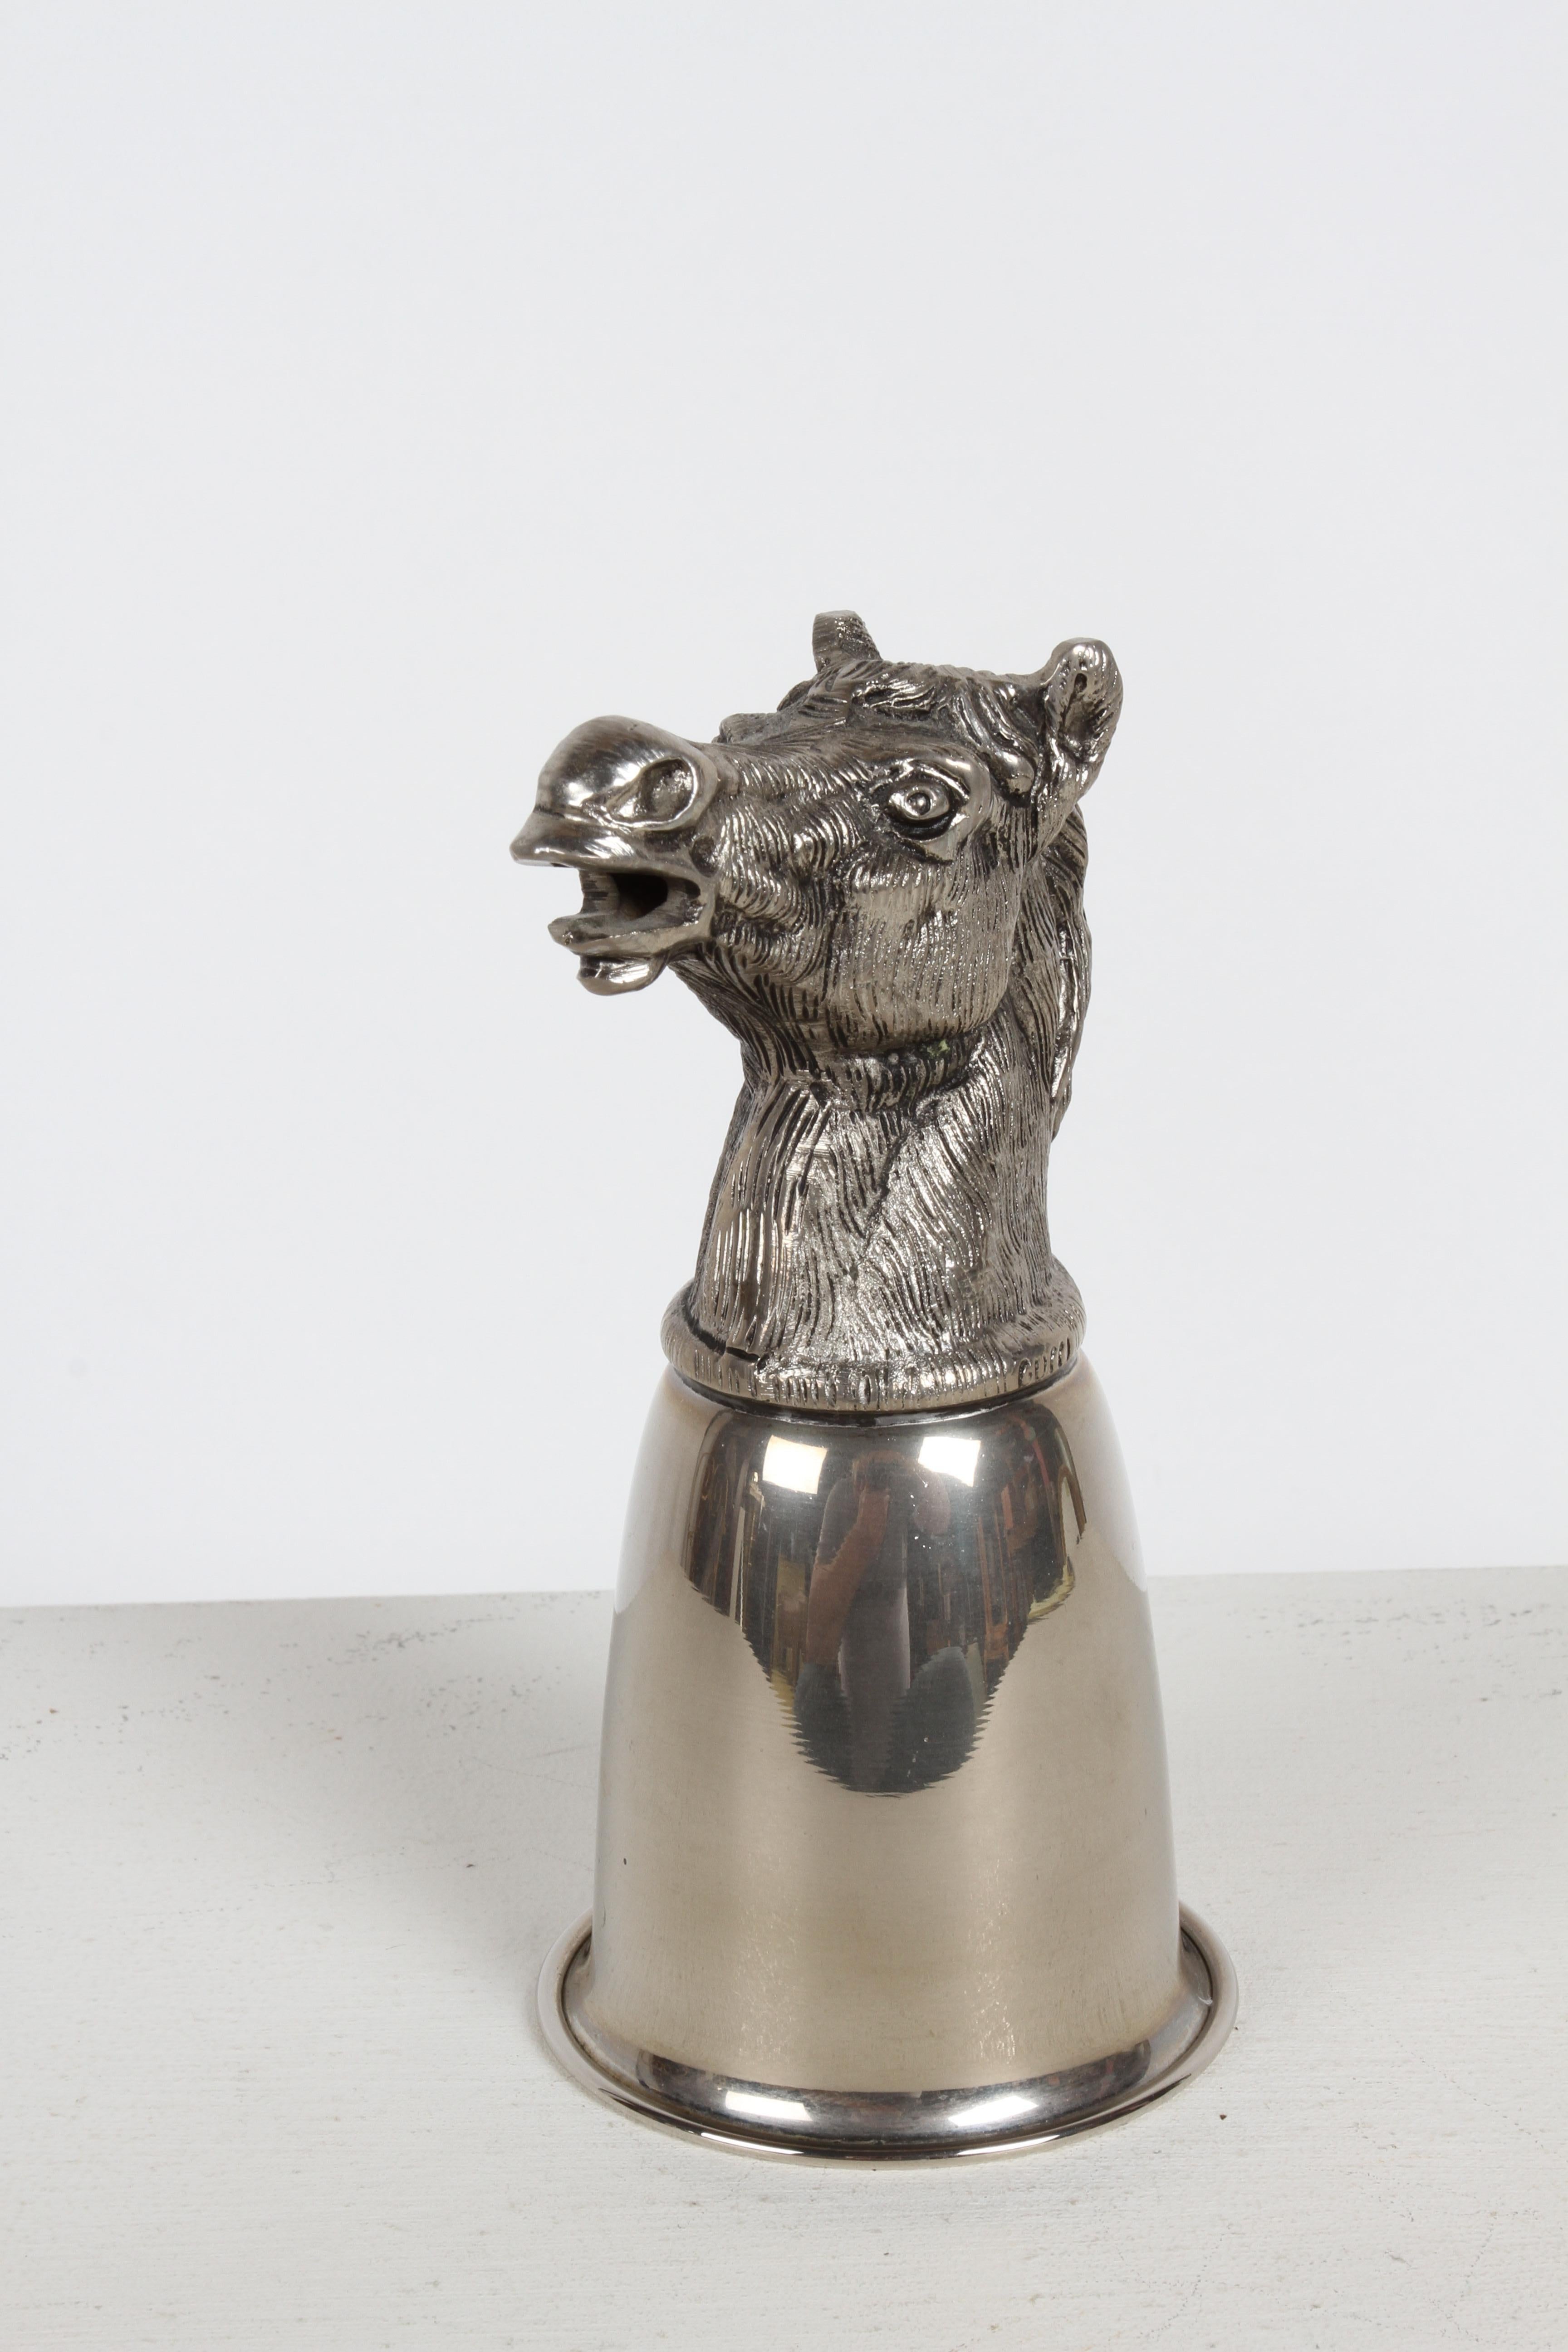 Circa 1970 Gucci - Italy Silver-Plated Horse Head hunting Equestrian Stirrup Cup. 
Cette coupe à boire / récipient peut reposer sur la tête ou être présentée retournée avec la tête bien visible, comme une pièce de sculpture sur votre bar. En bel